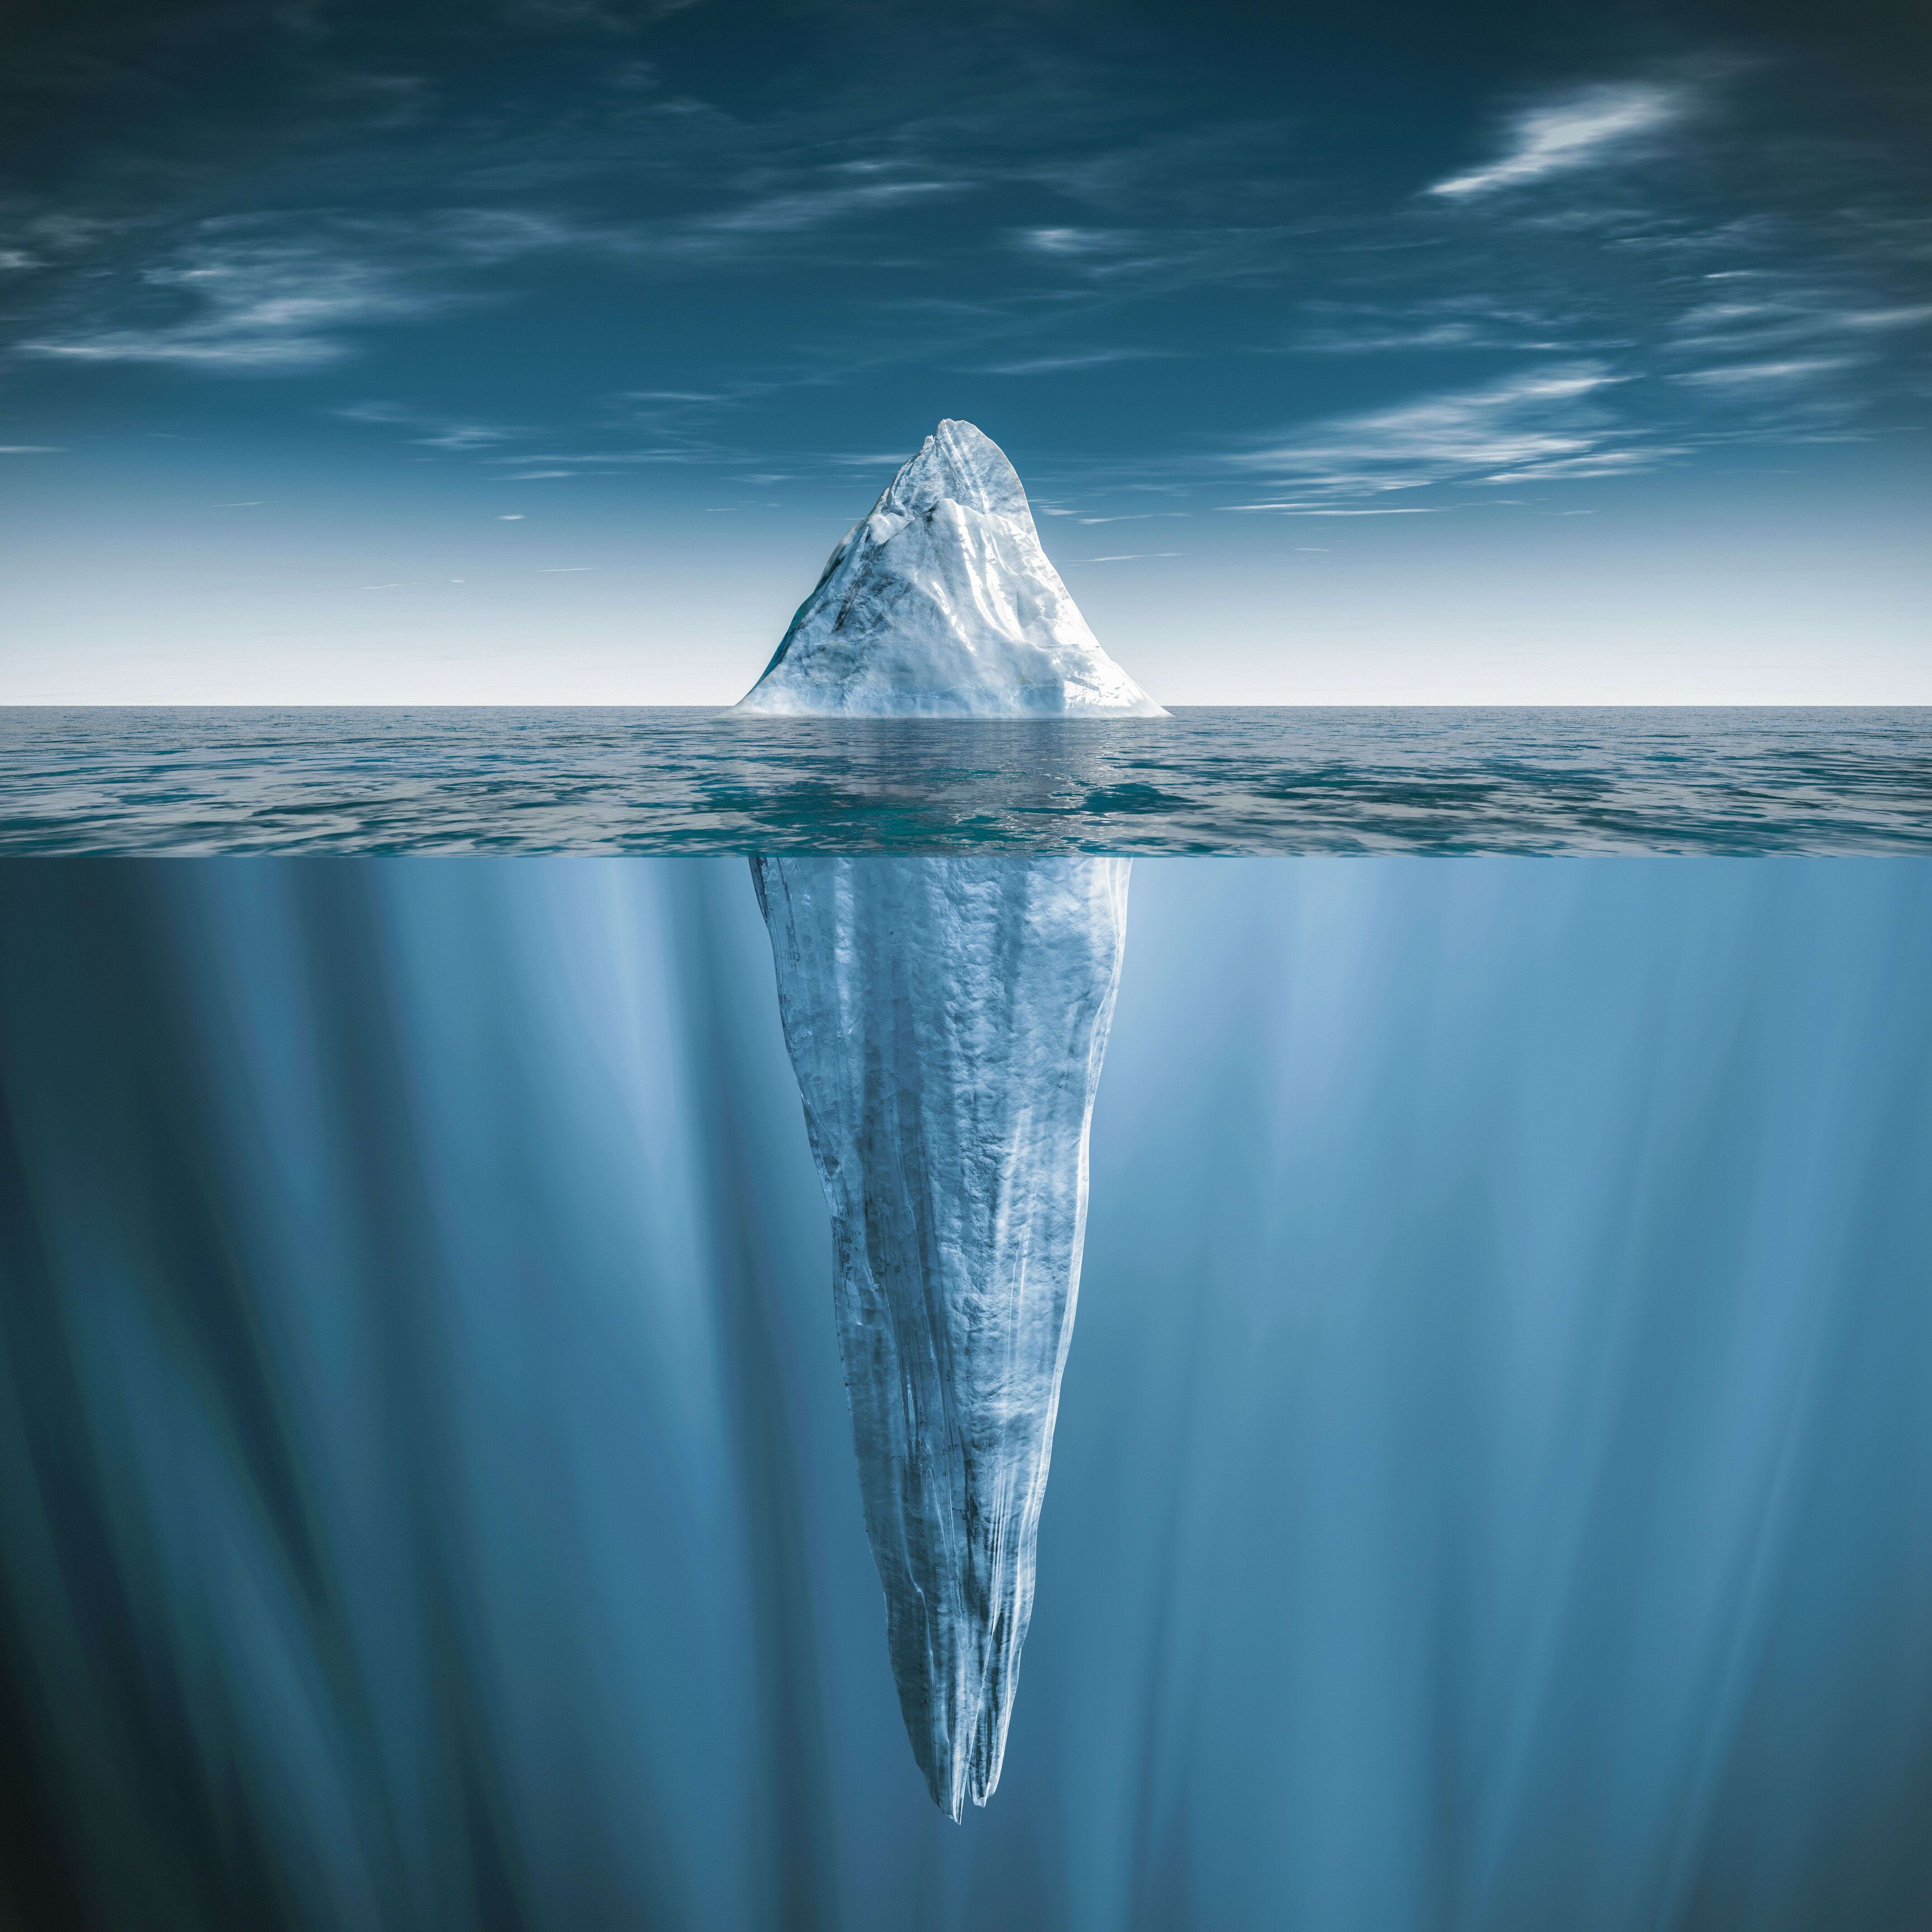 Image d'artiste (et donc erronée) d'un iceberg.